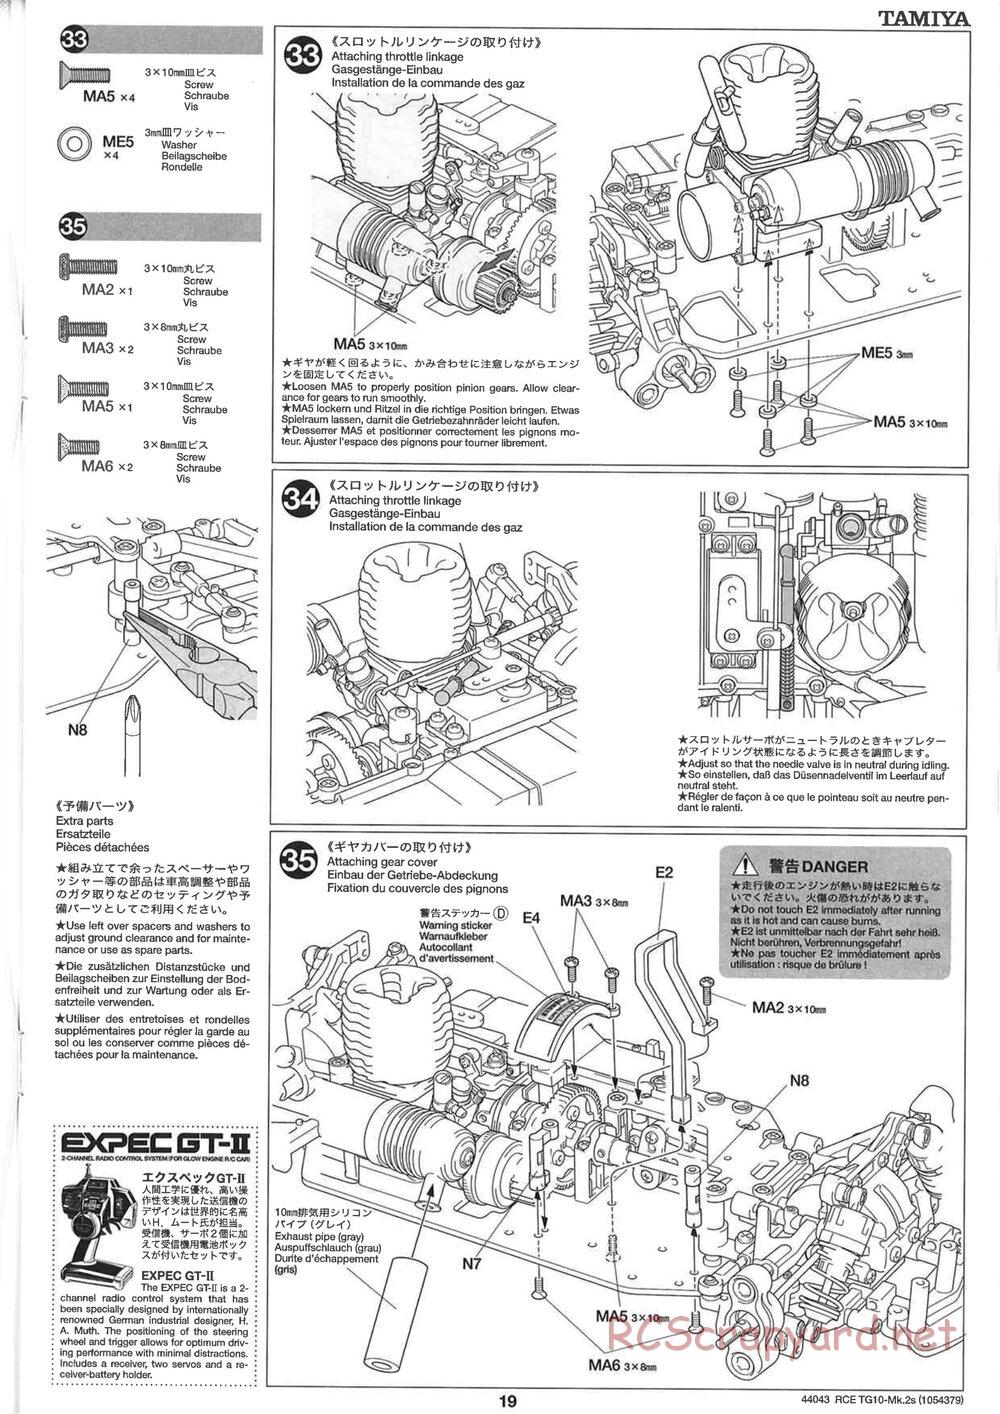 Tamiya - TG10 Mk.2s Chassis - Manual - Page 20